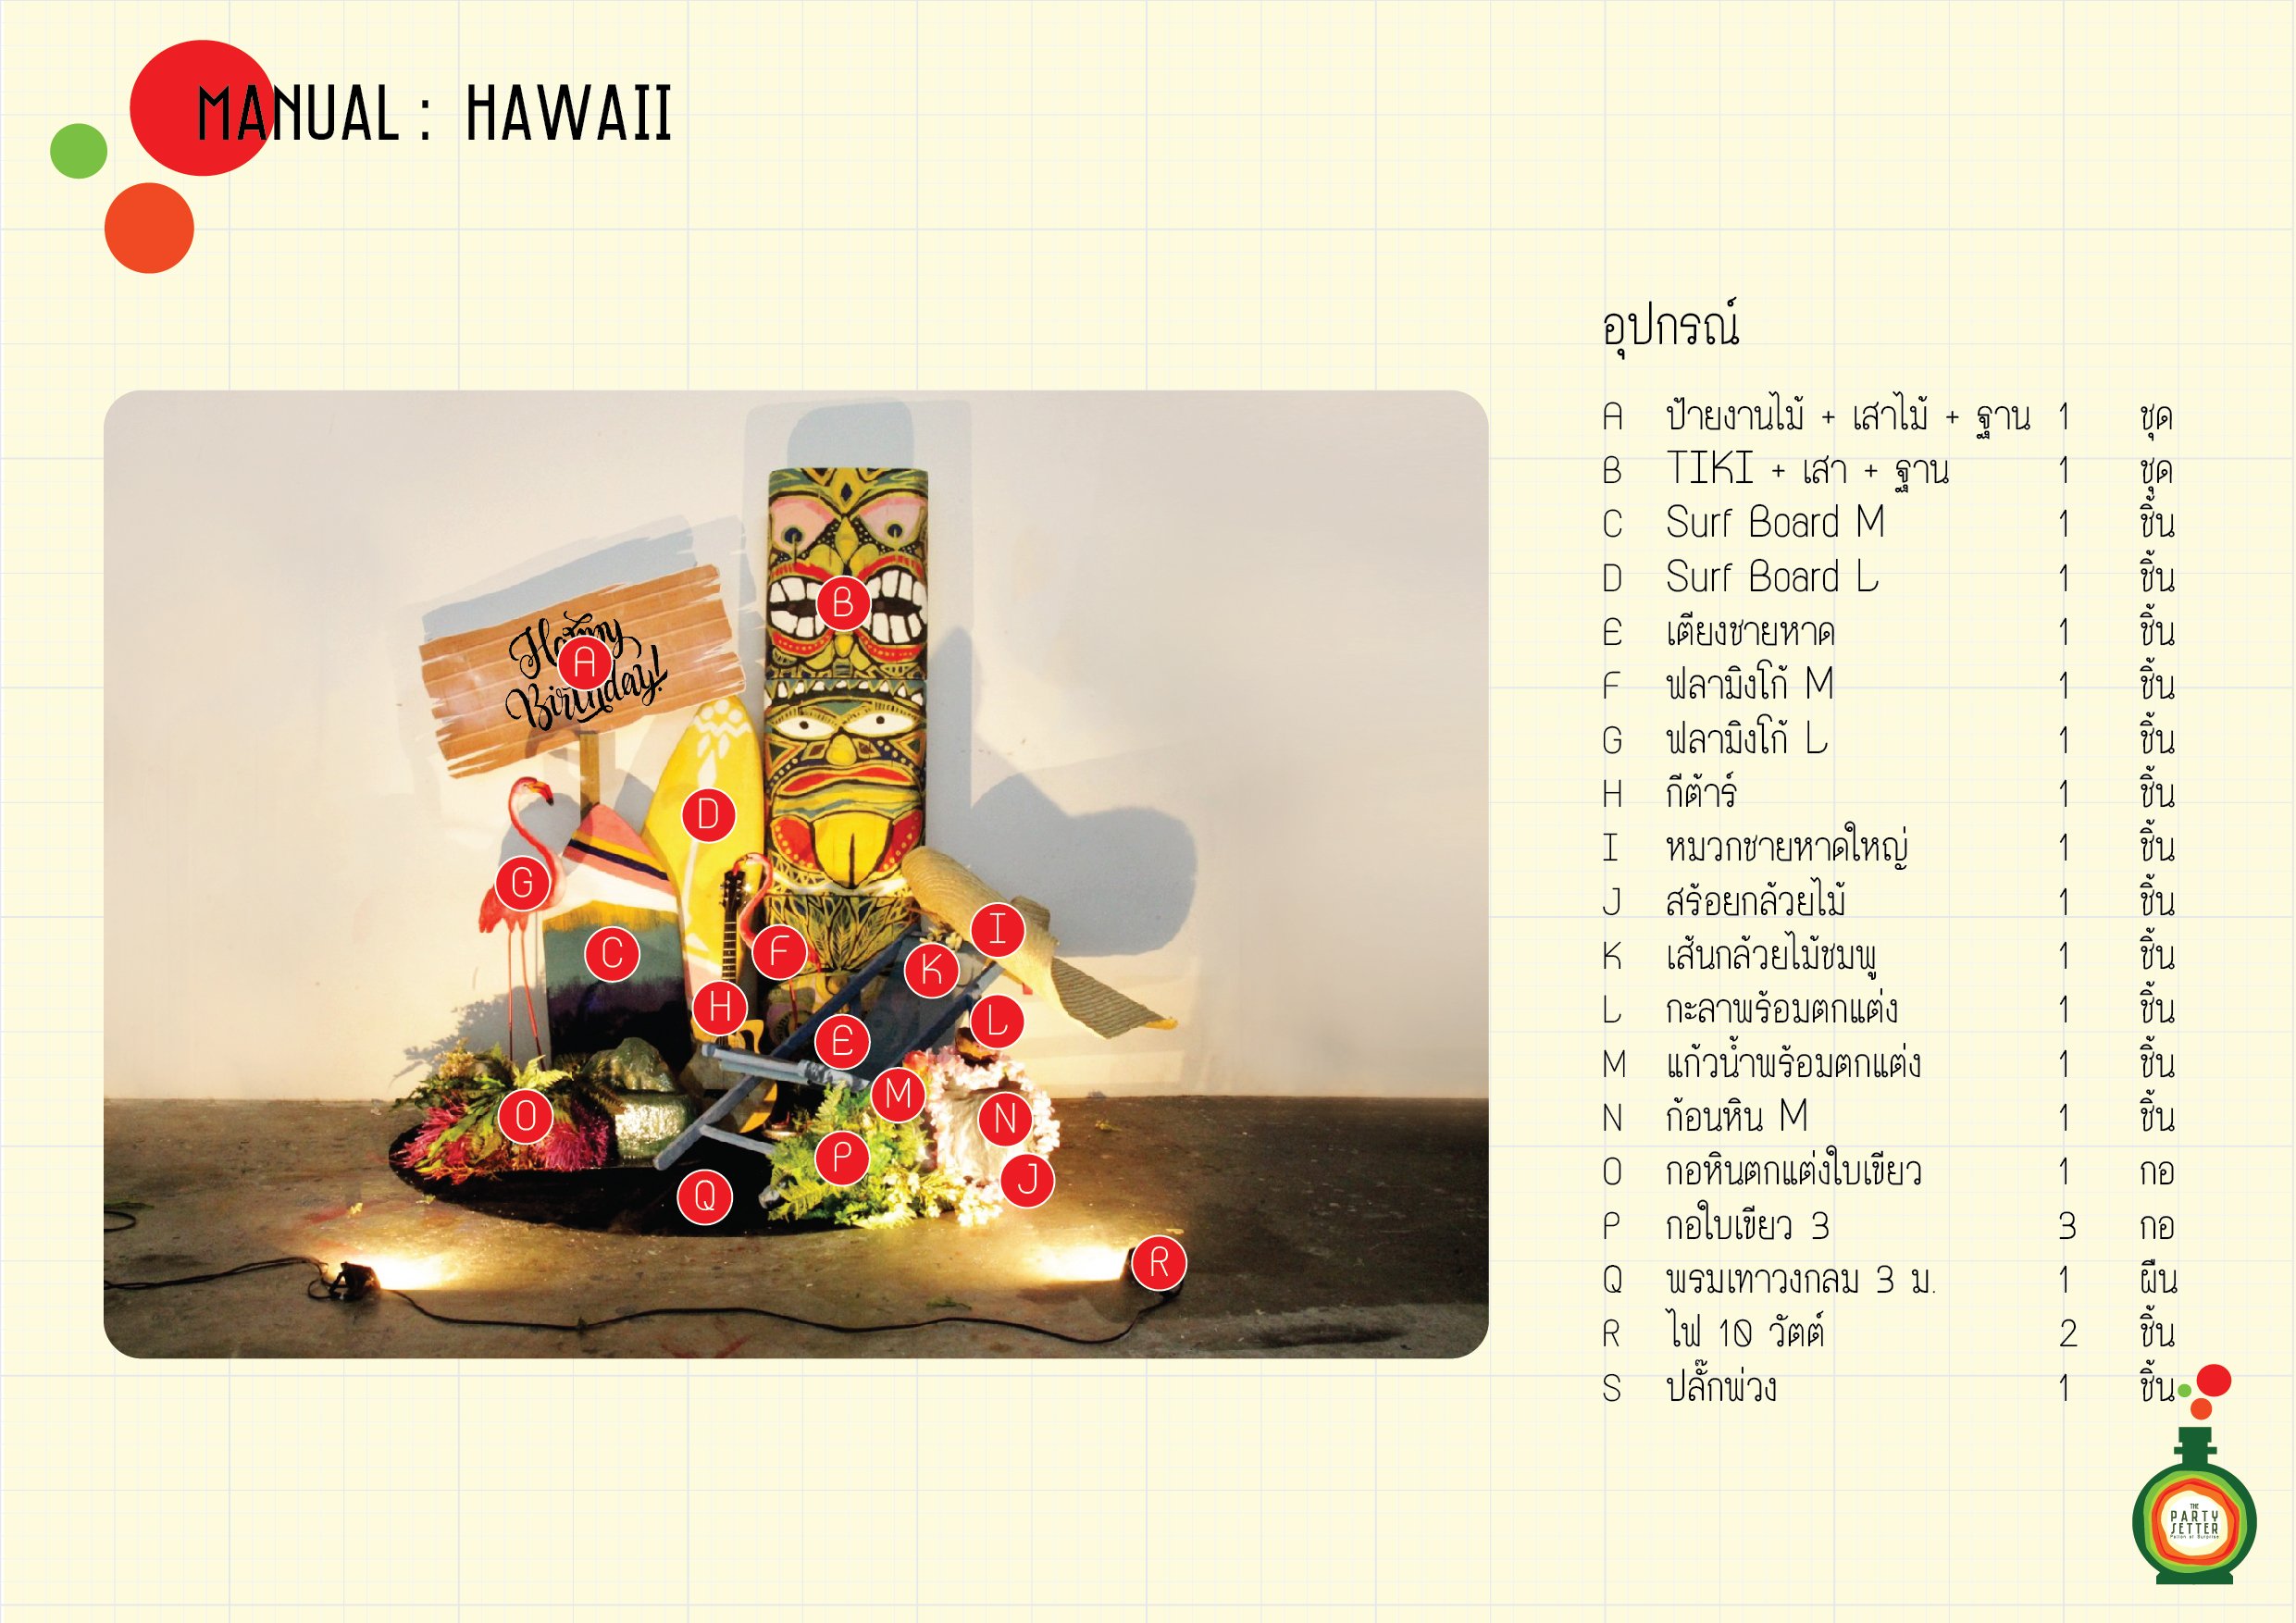 Manual_Hawaii-4-00-01.jpg